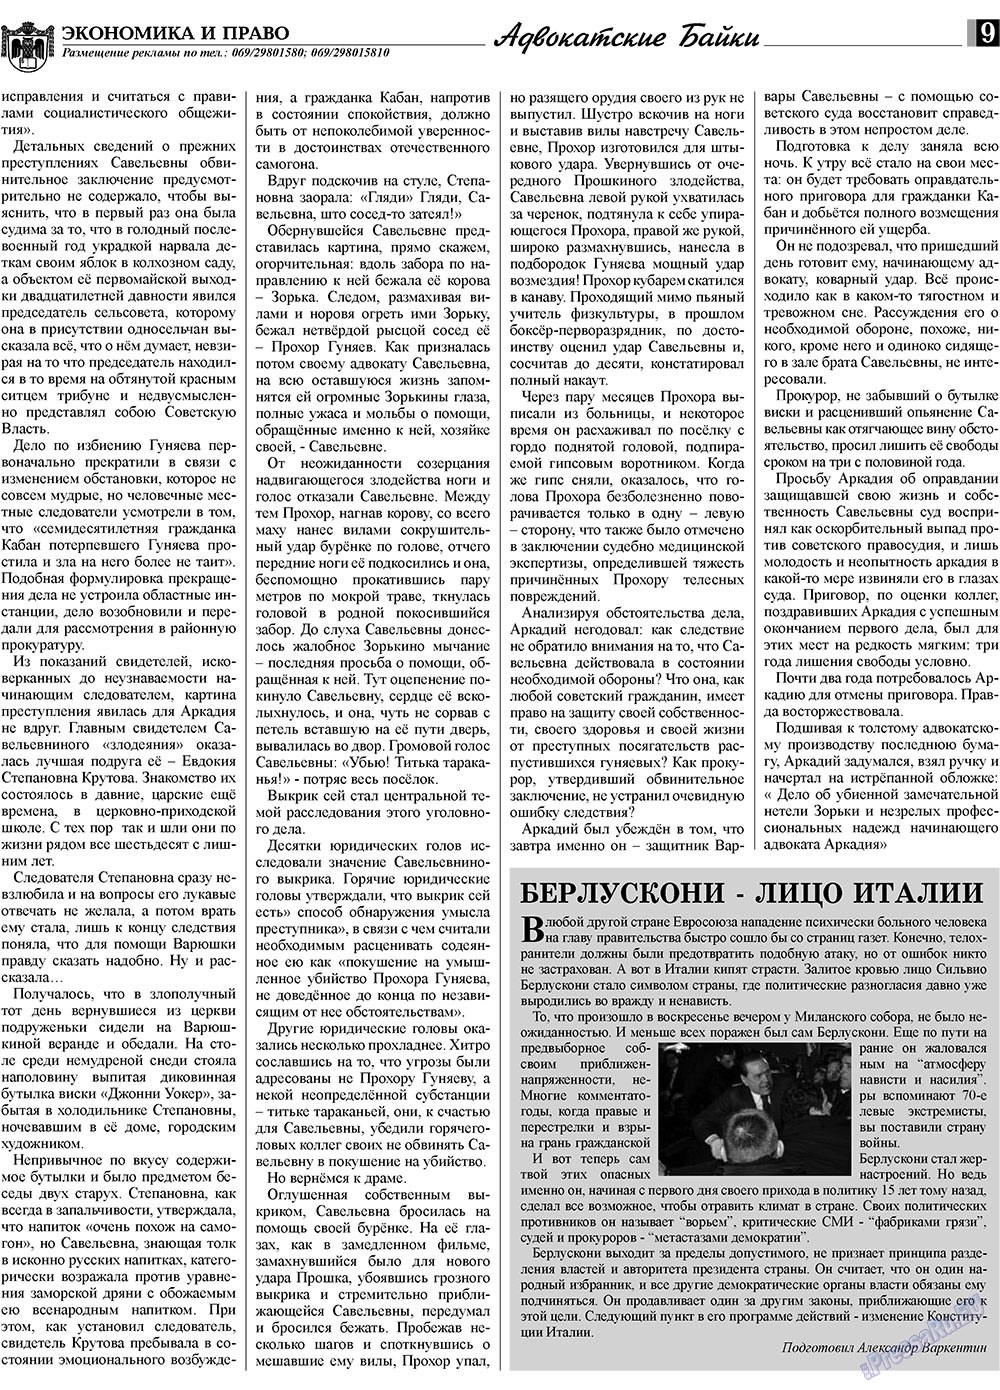 Экономика и право, газета. 2010 №1 стр.9